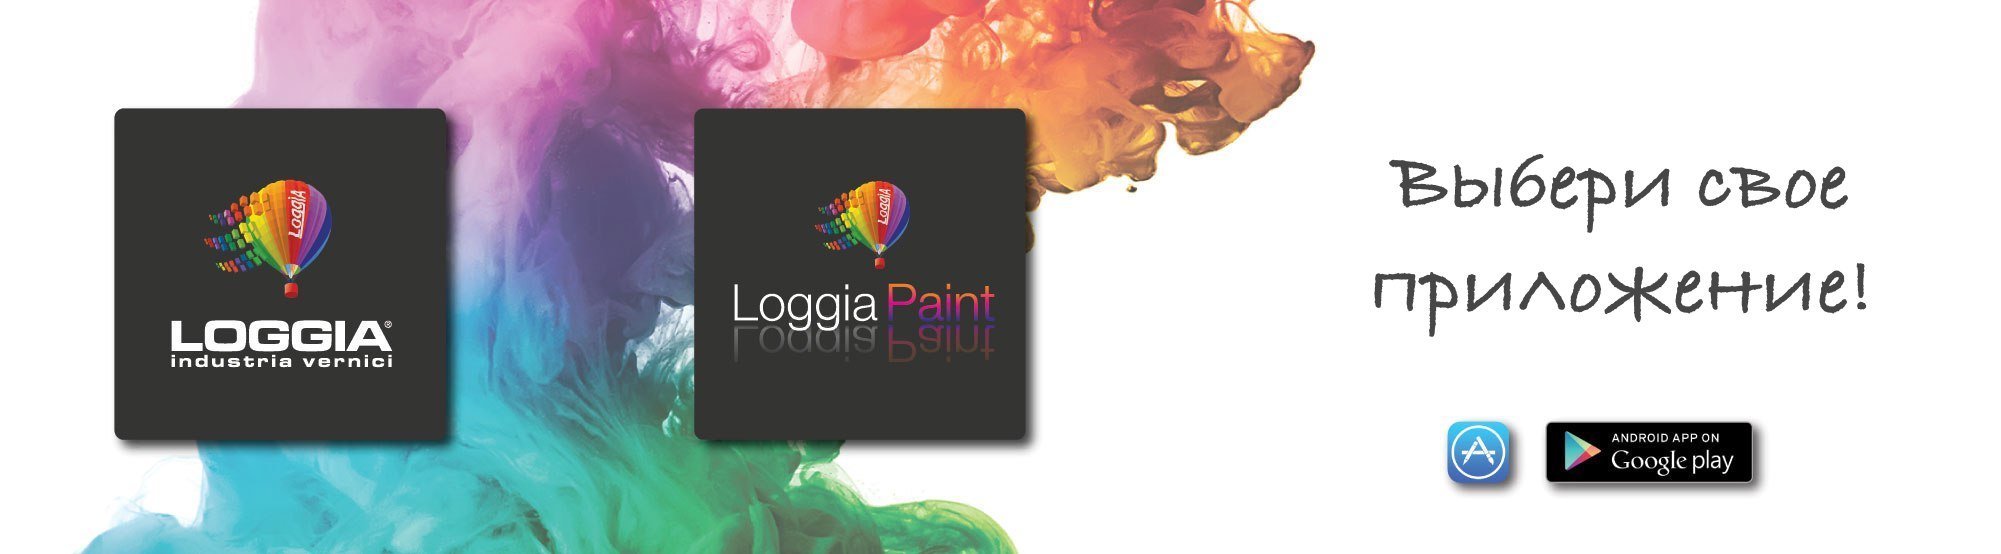 Приложения Loggia Paint и Loggia App